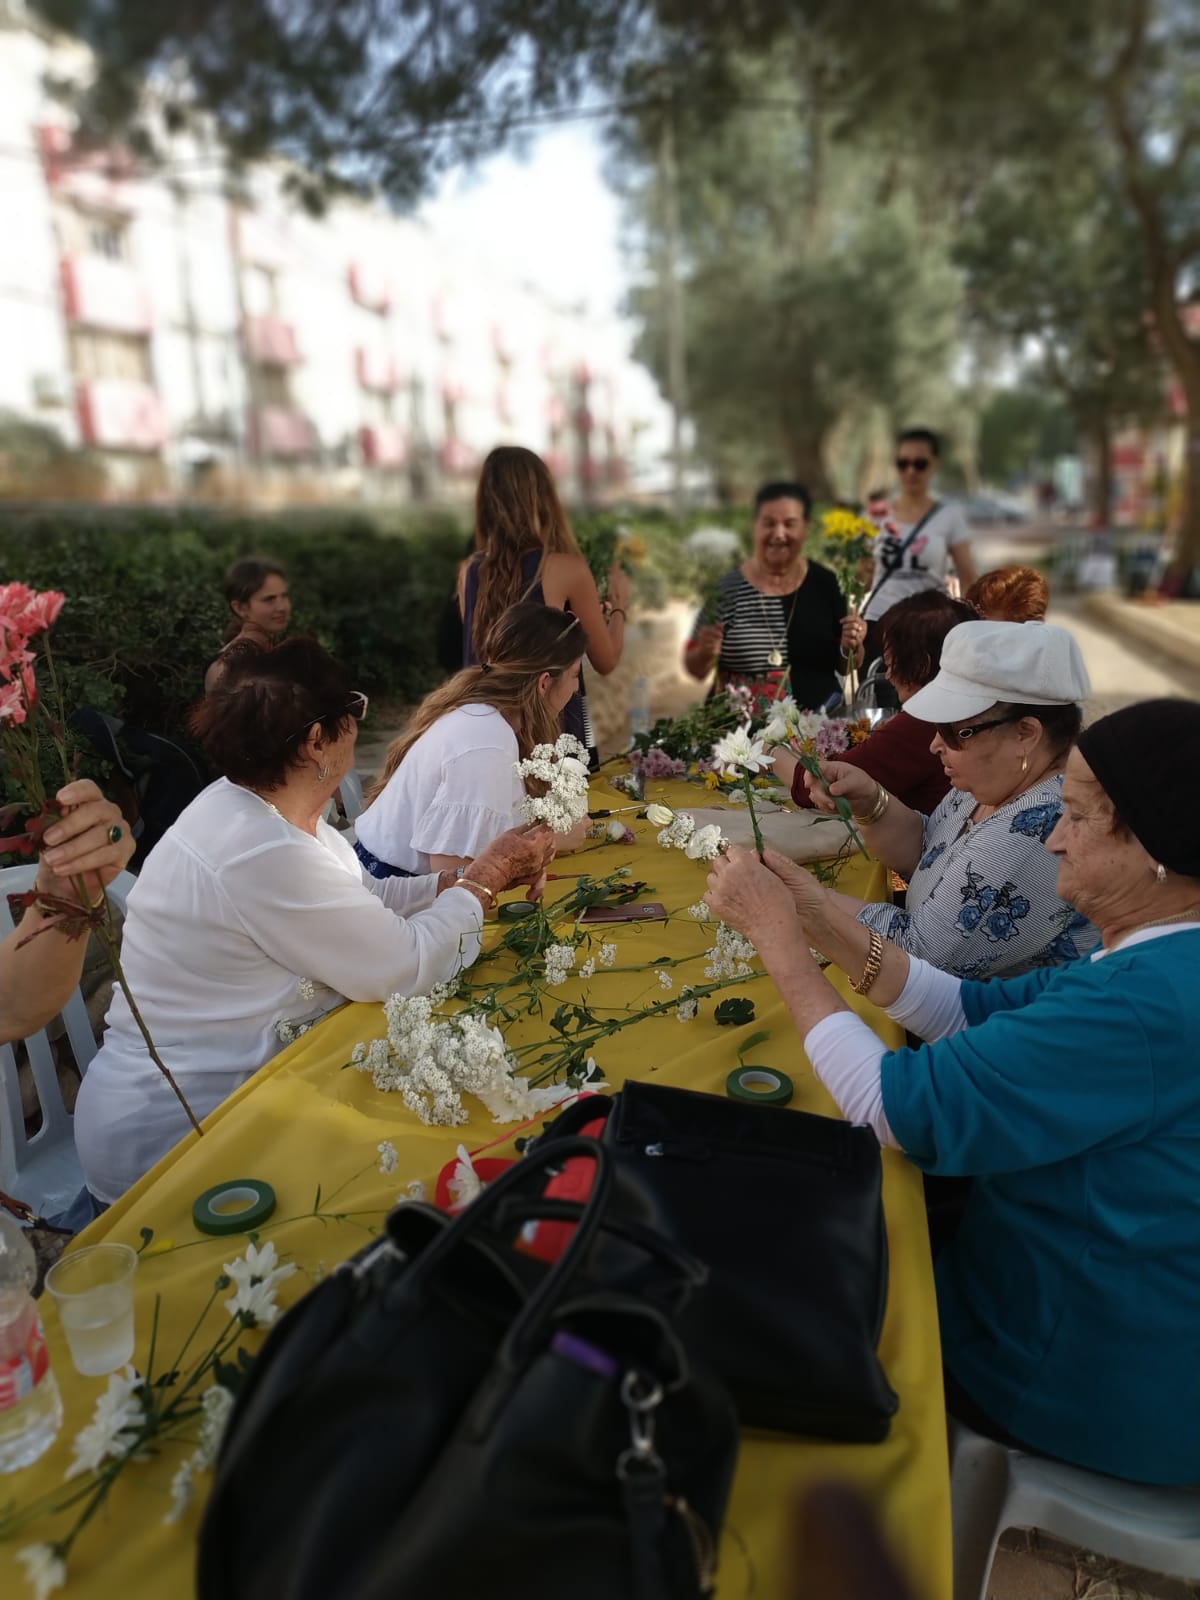 פסטיבל שבועות "פאטה מורגנה" התקיים בשכונה ד' מזרח בבאר שבע